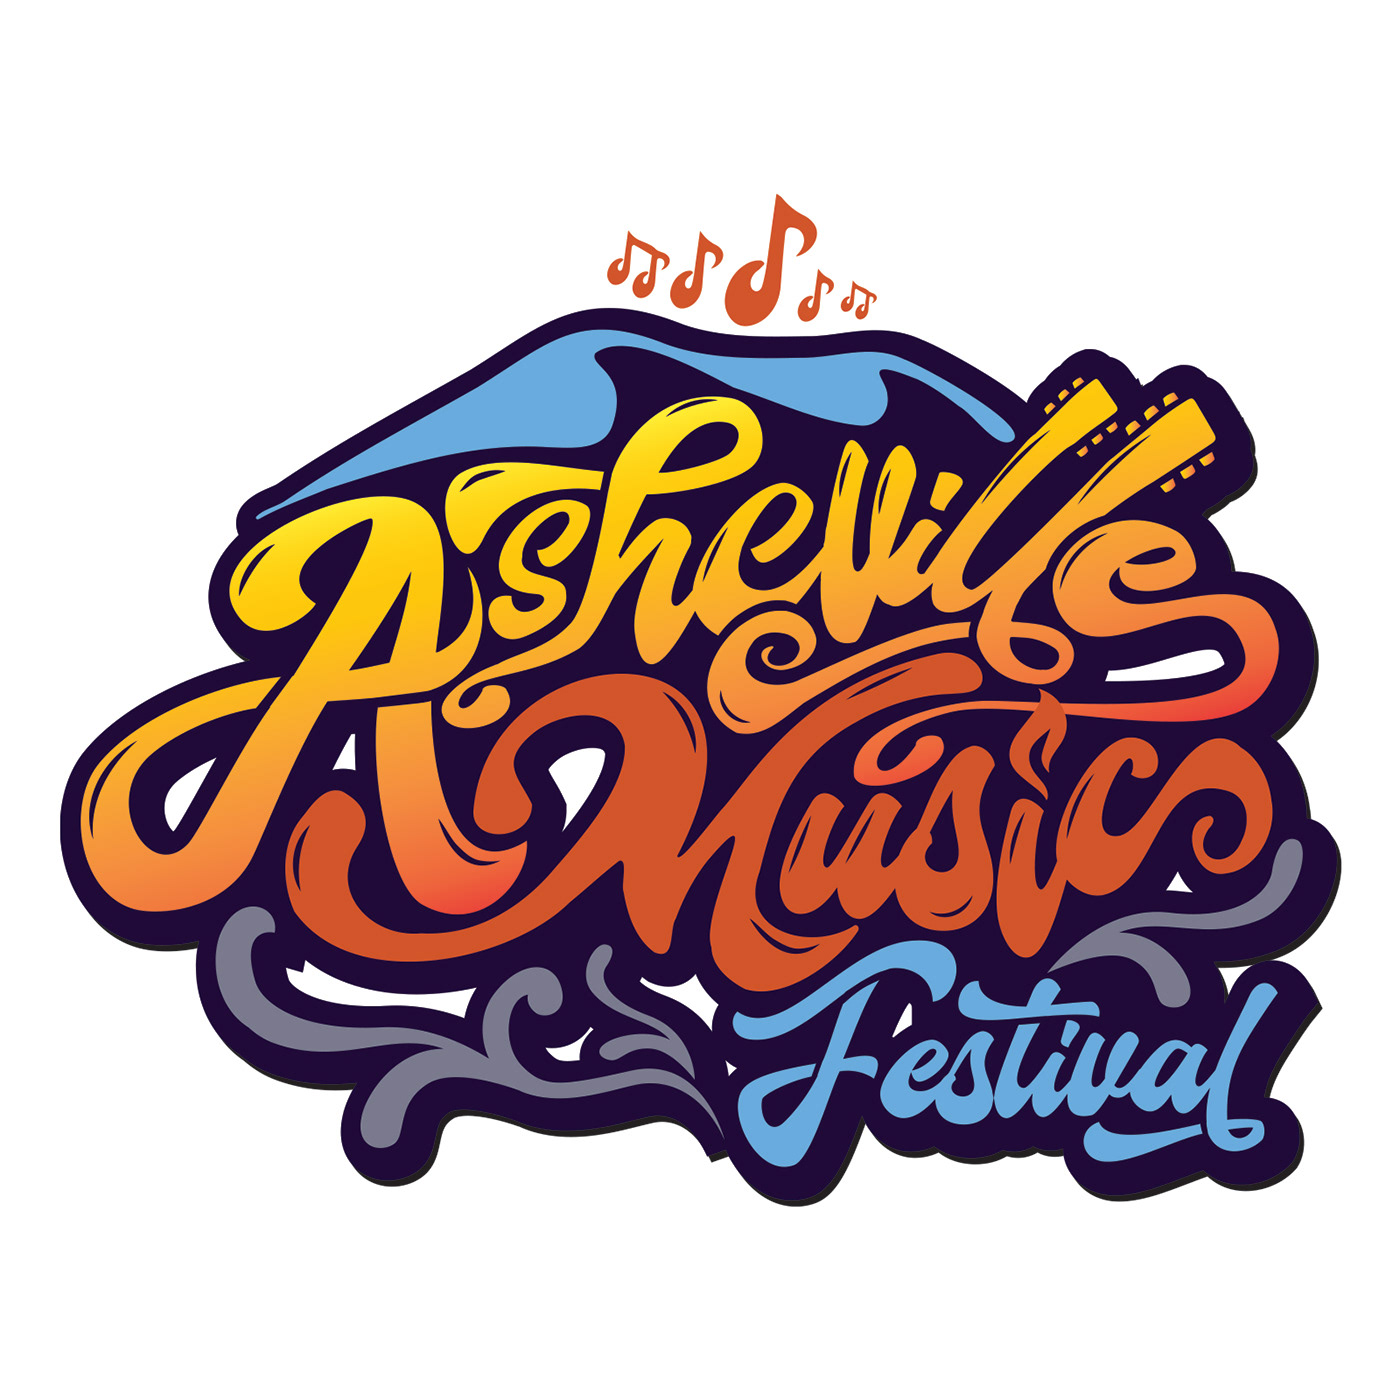 logo branding  festival music typography   Entertainment Event Asheville